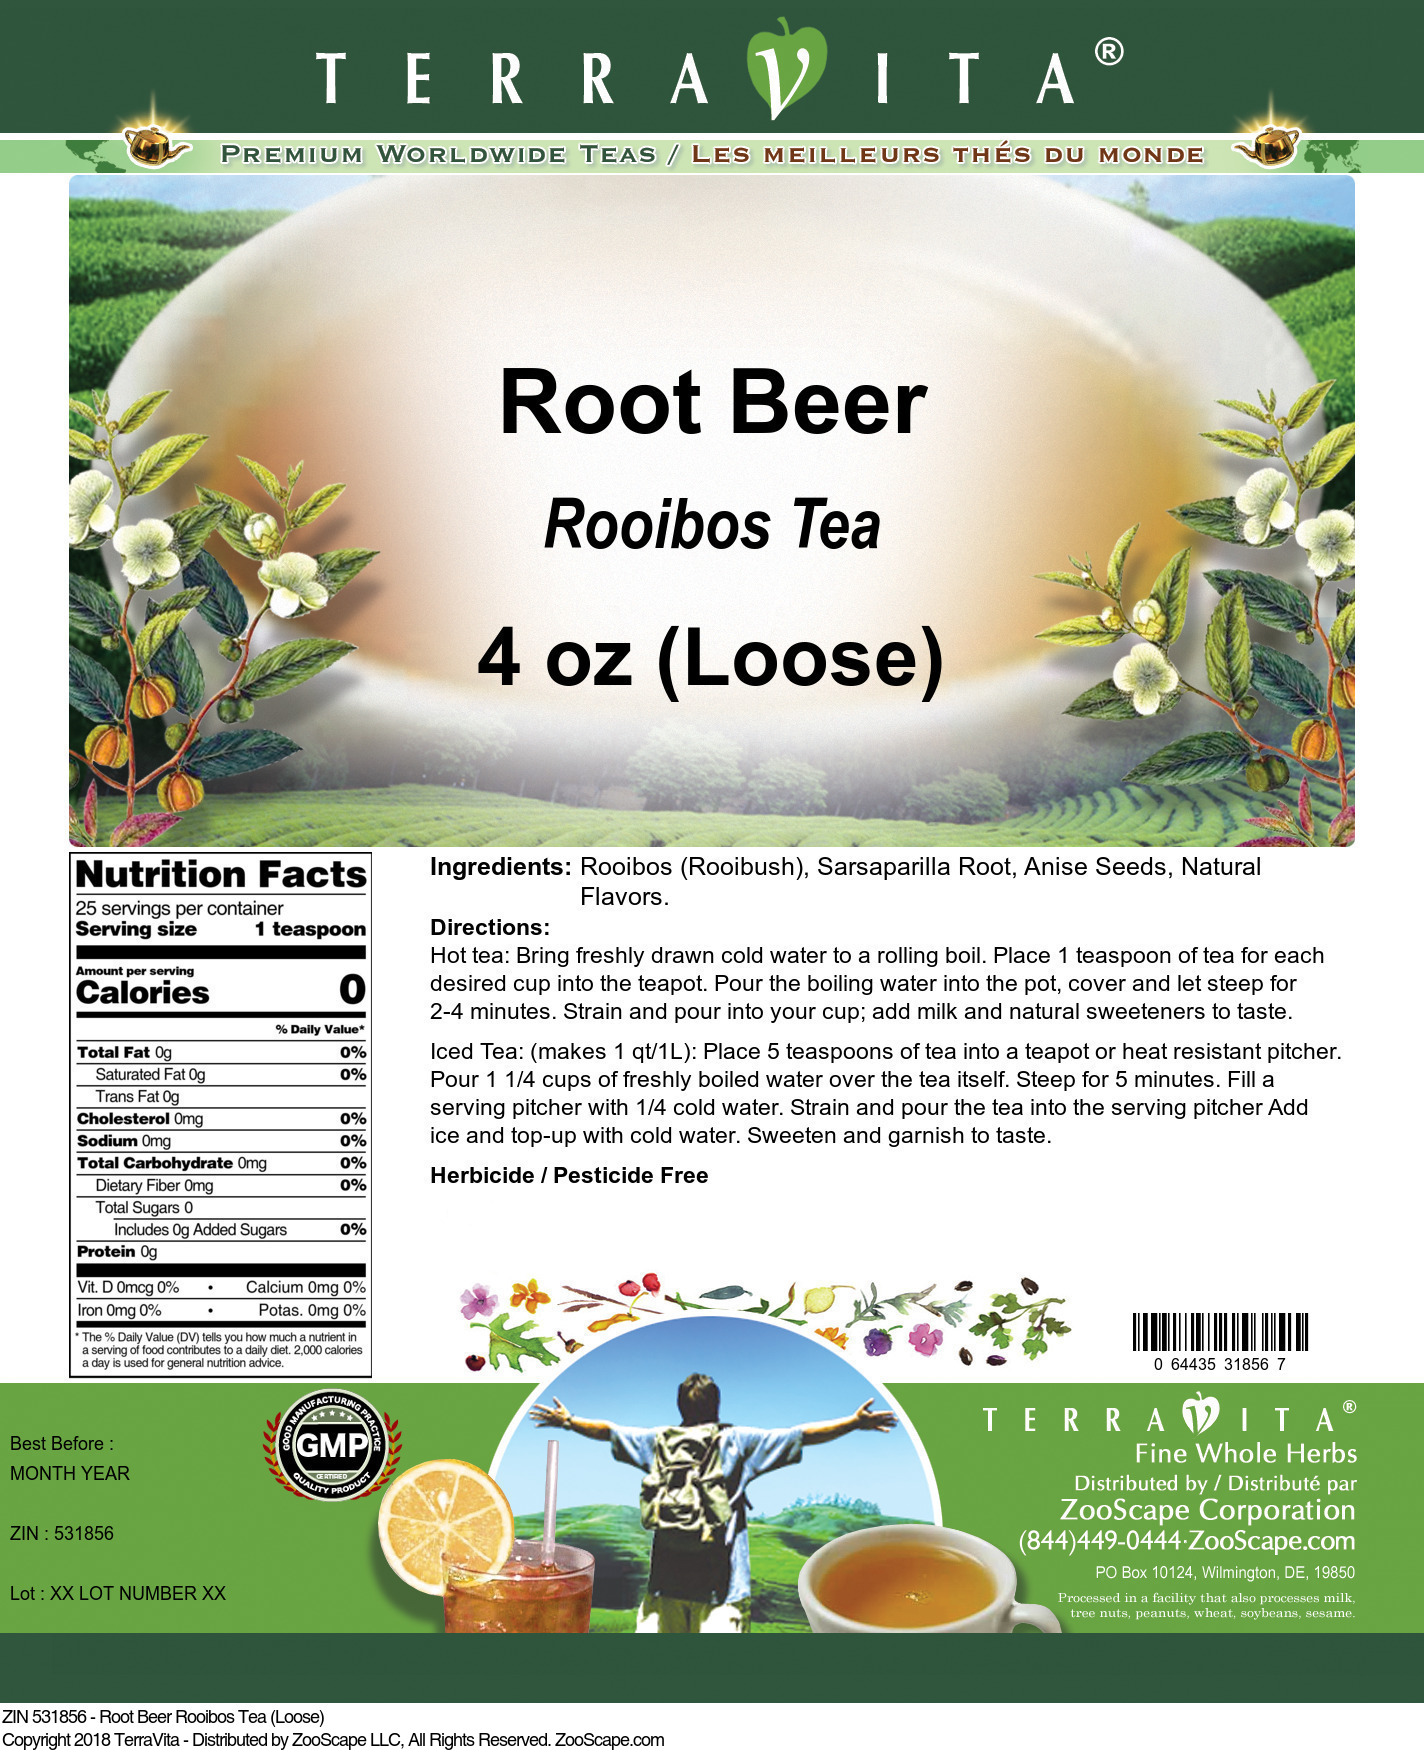 Root Beer Rooibos Tea (Loose) - Label